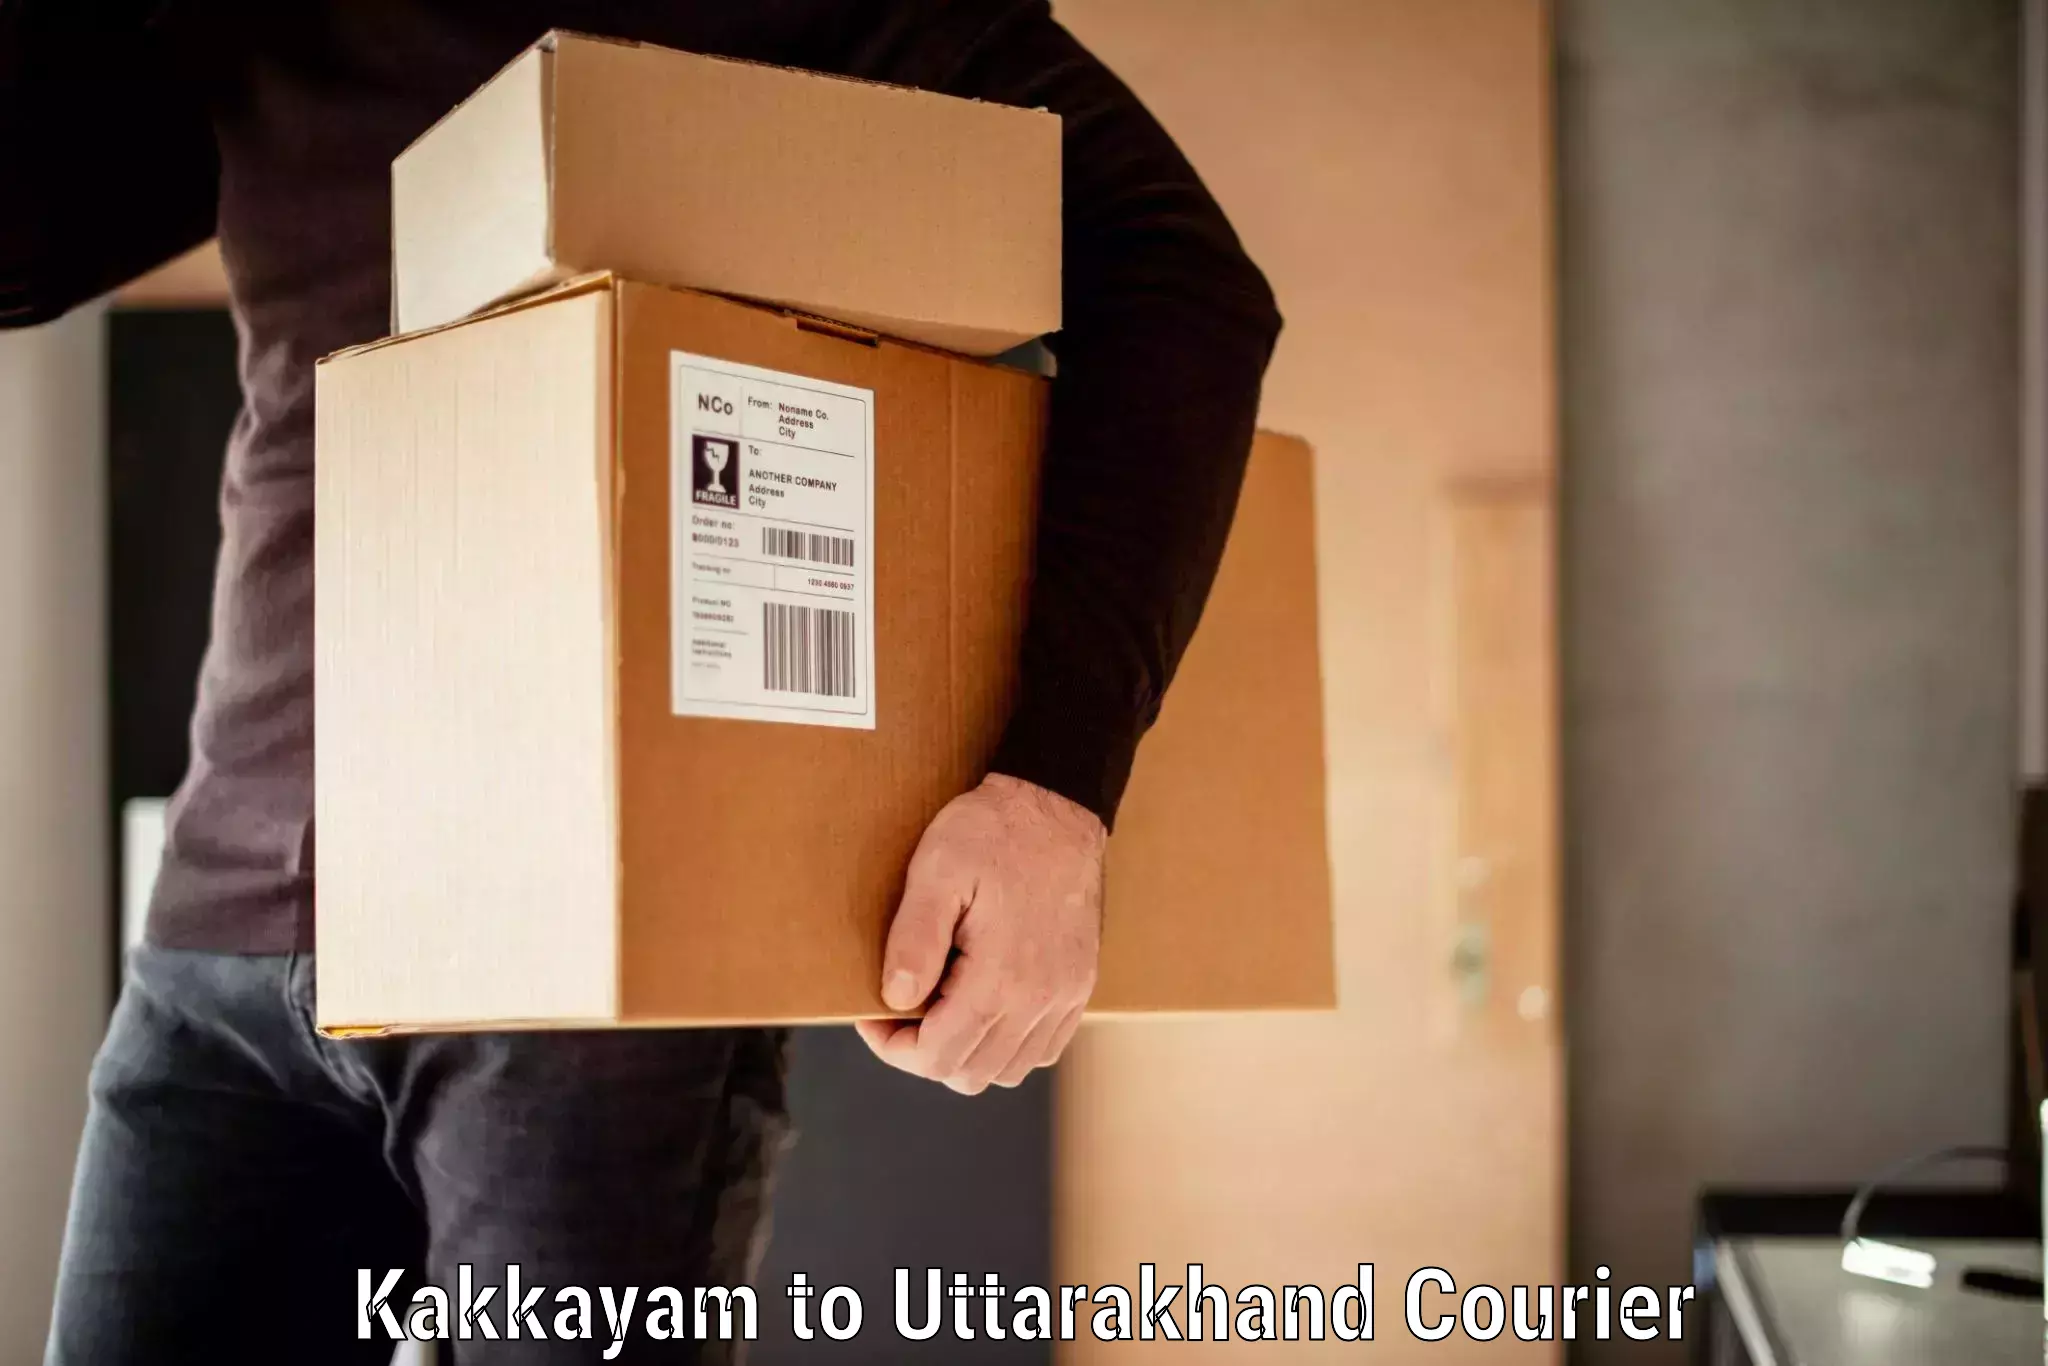 Baggage shipping experience in Kakkayam to Udham Singh Nagar